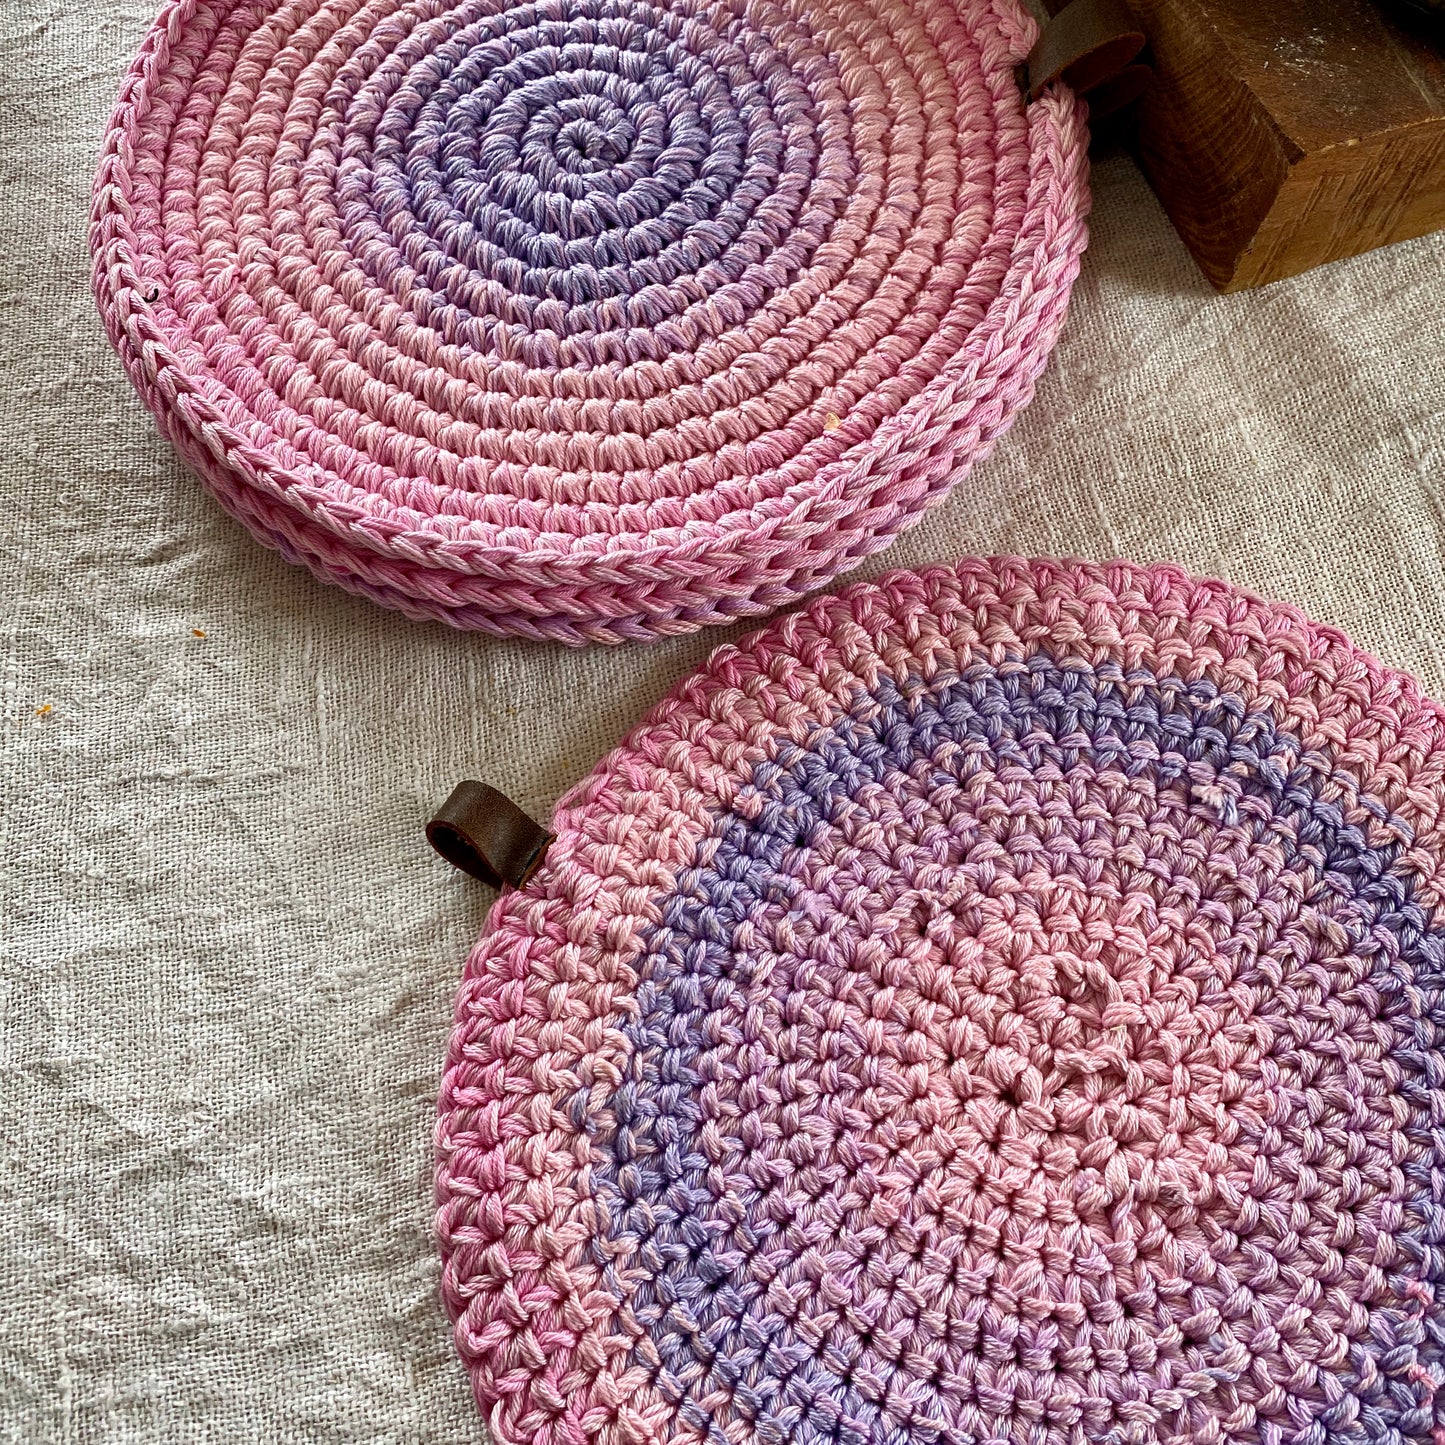 Round Lavender Crochet Place Mats - Cottage Decor Kitchen Set of 4